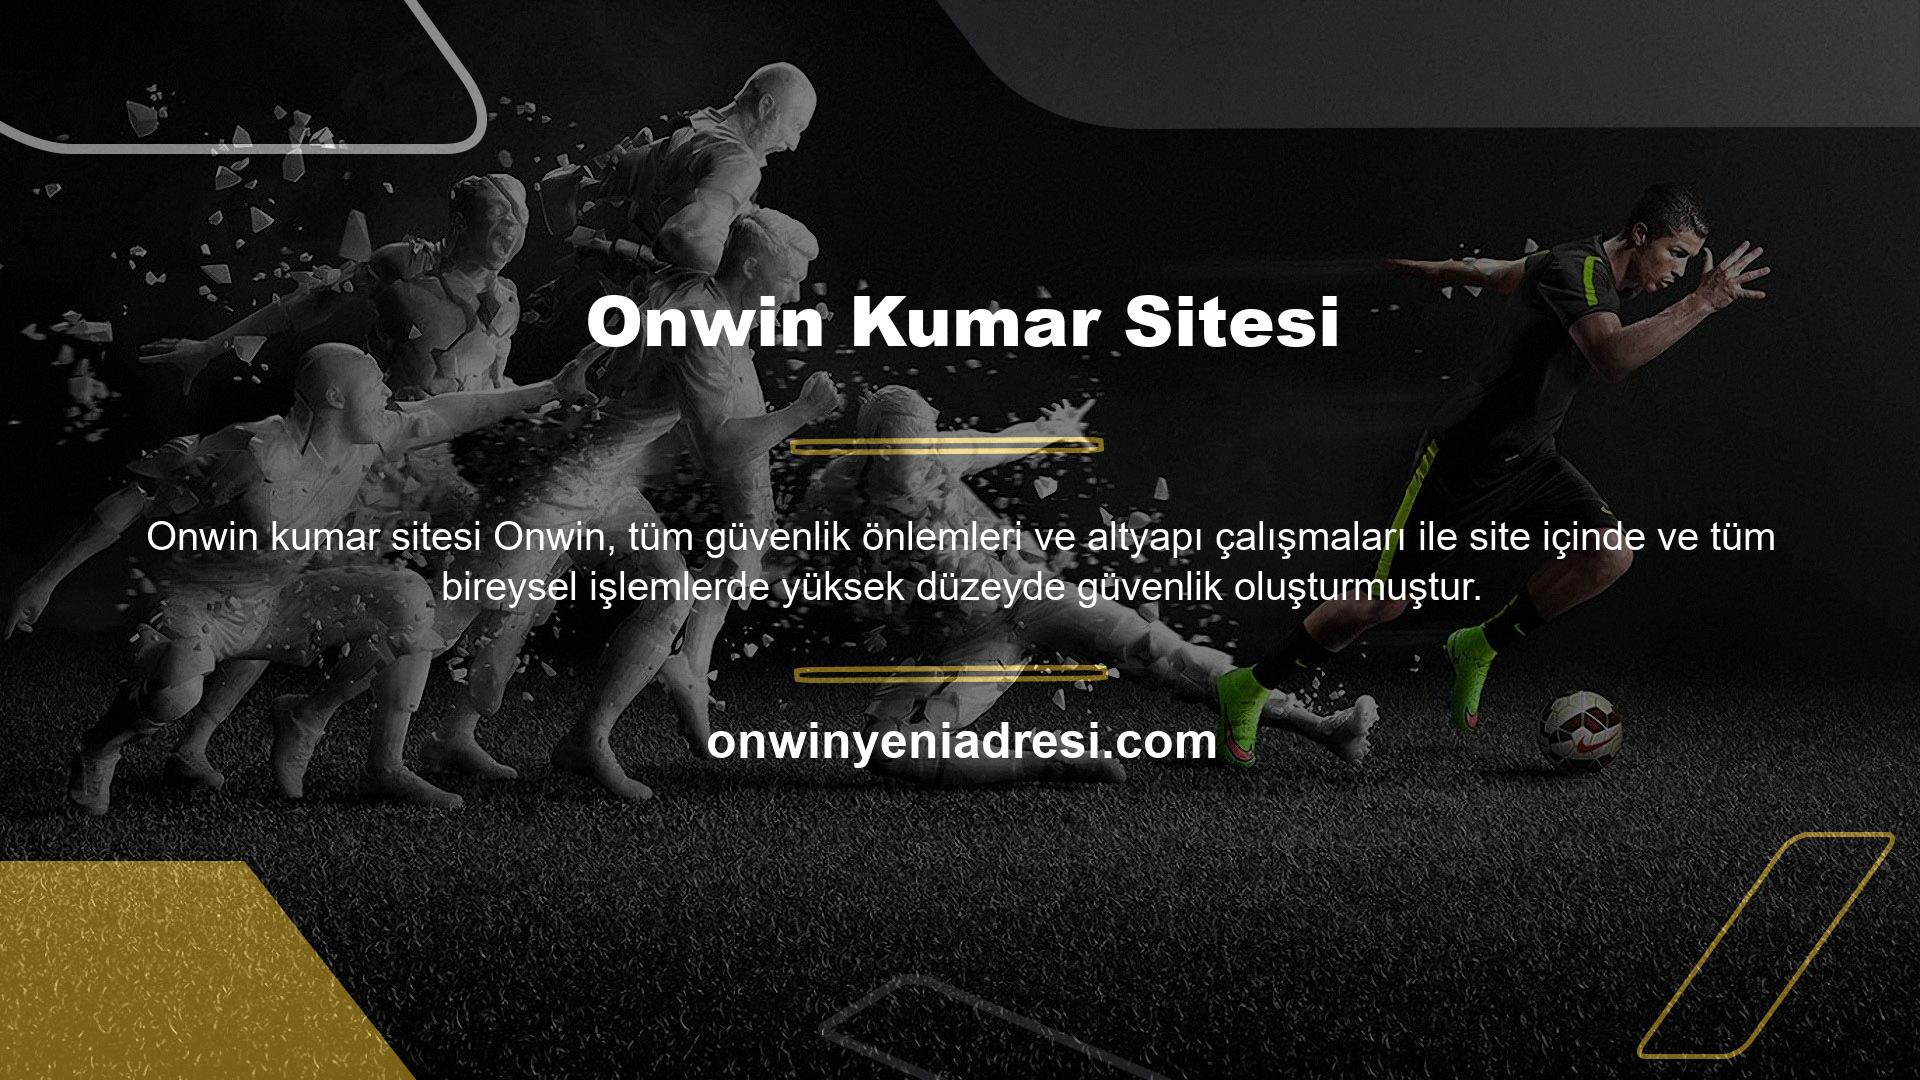 Onwin Kumar Sitesi